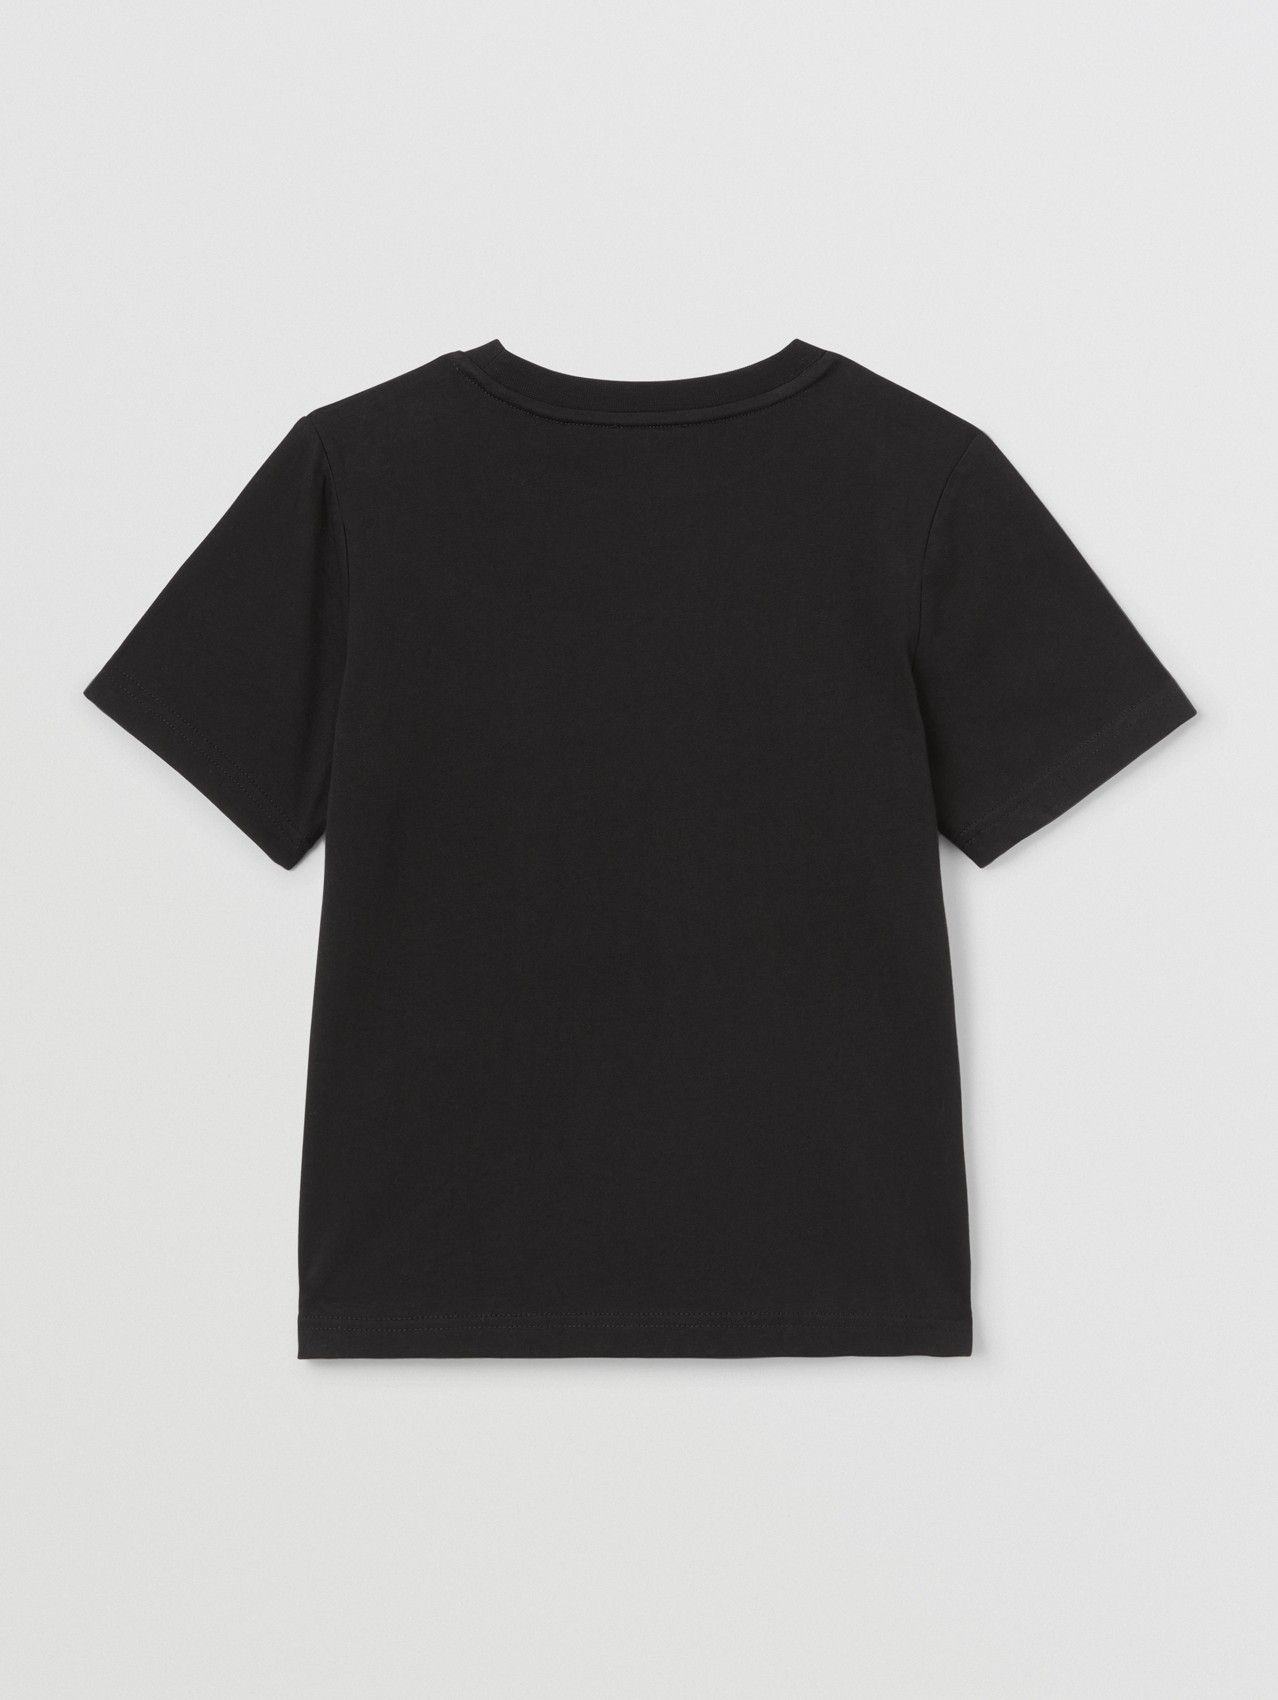 Camiseta en algodón con logotipo bordado (Negro)